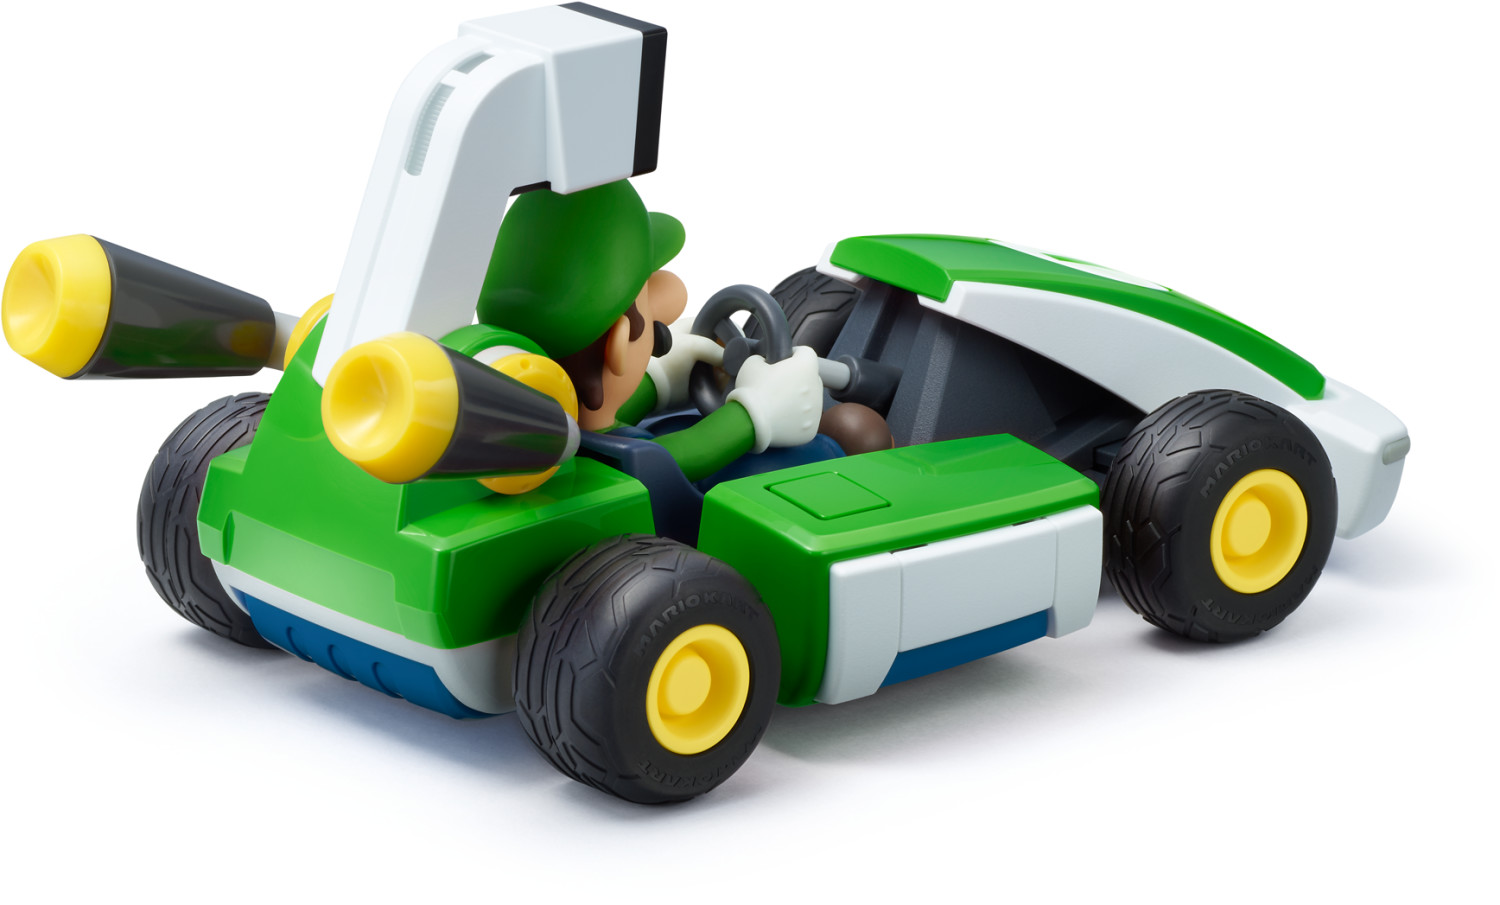 Mario Kart Live: Home Circuit - Luigi Set : Target